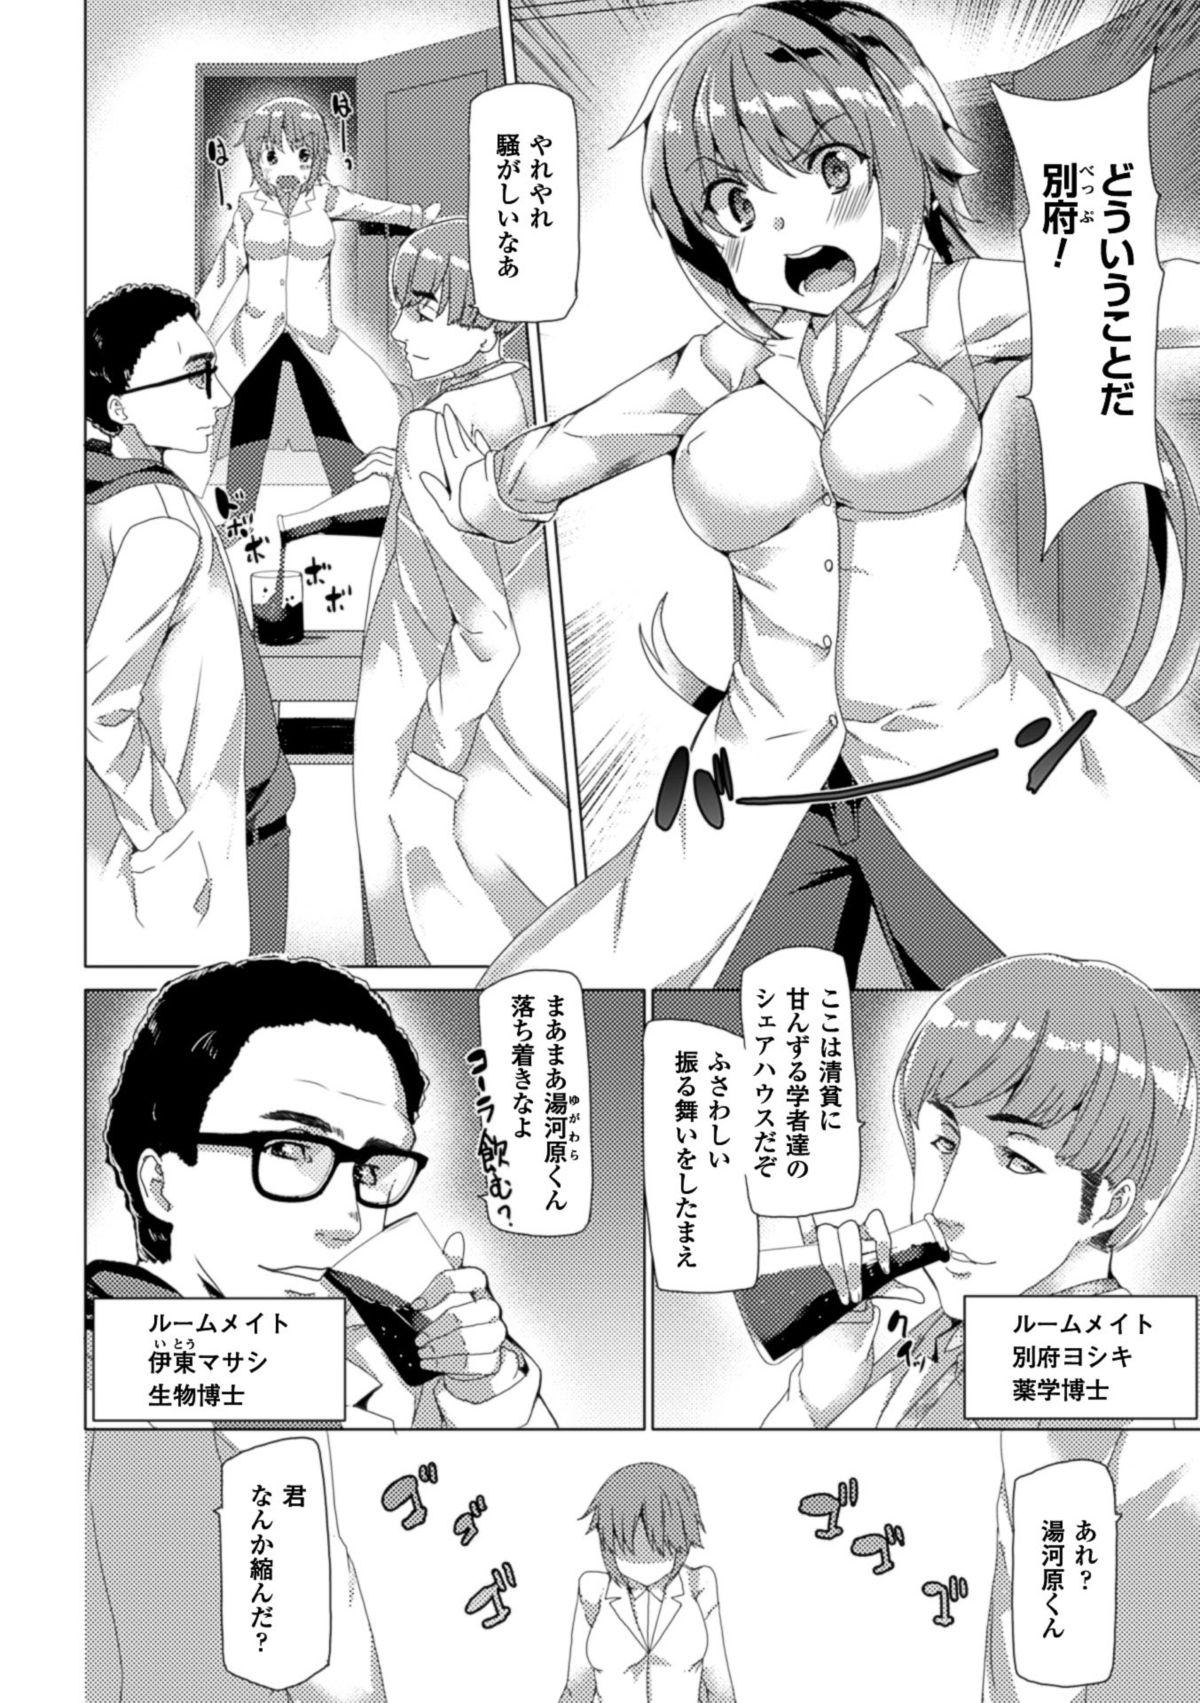 Bessatsu Comic Unreal Nyotaika H wa Tomerarenai Digital Ban Vol. 1 71